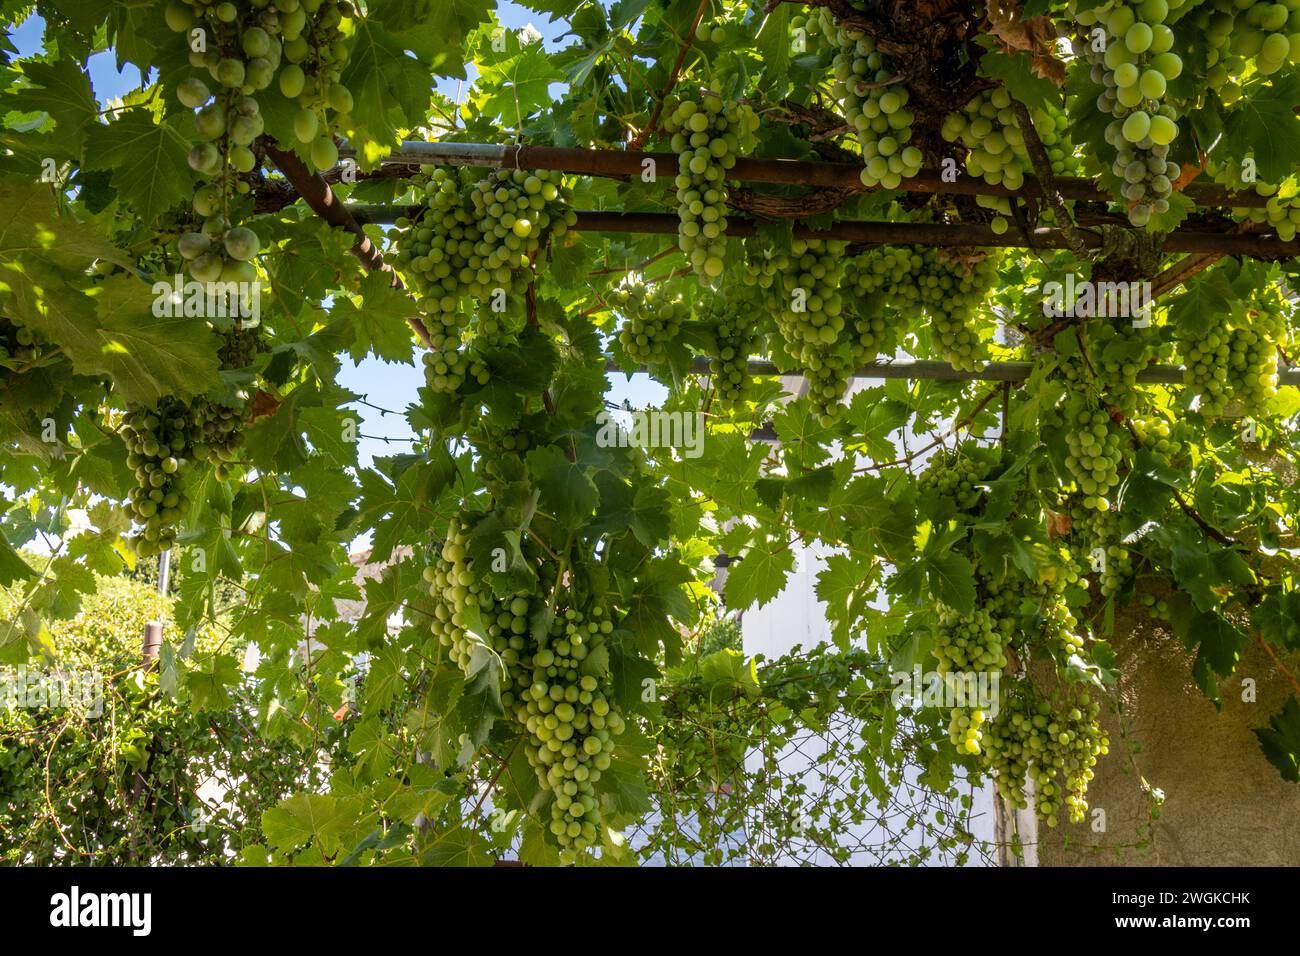 Espectaculares racimos de uvas verdes en la vid en una casa de campo, Corrales del Vino, Zamora, España Stock Photo